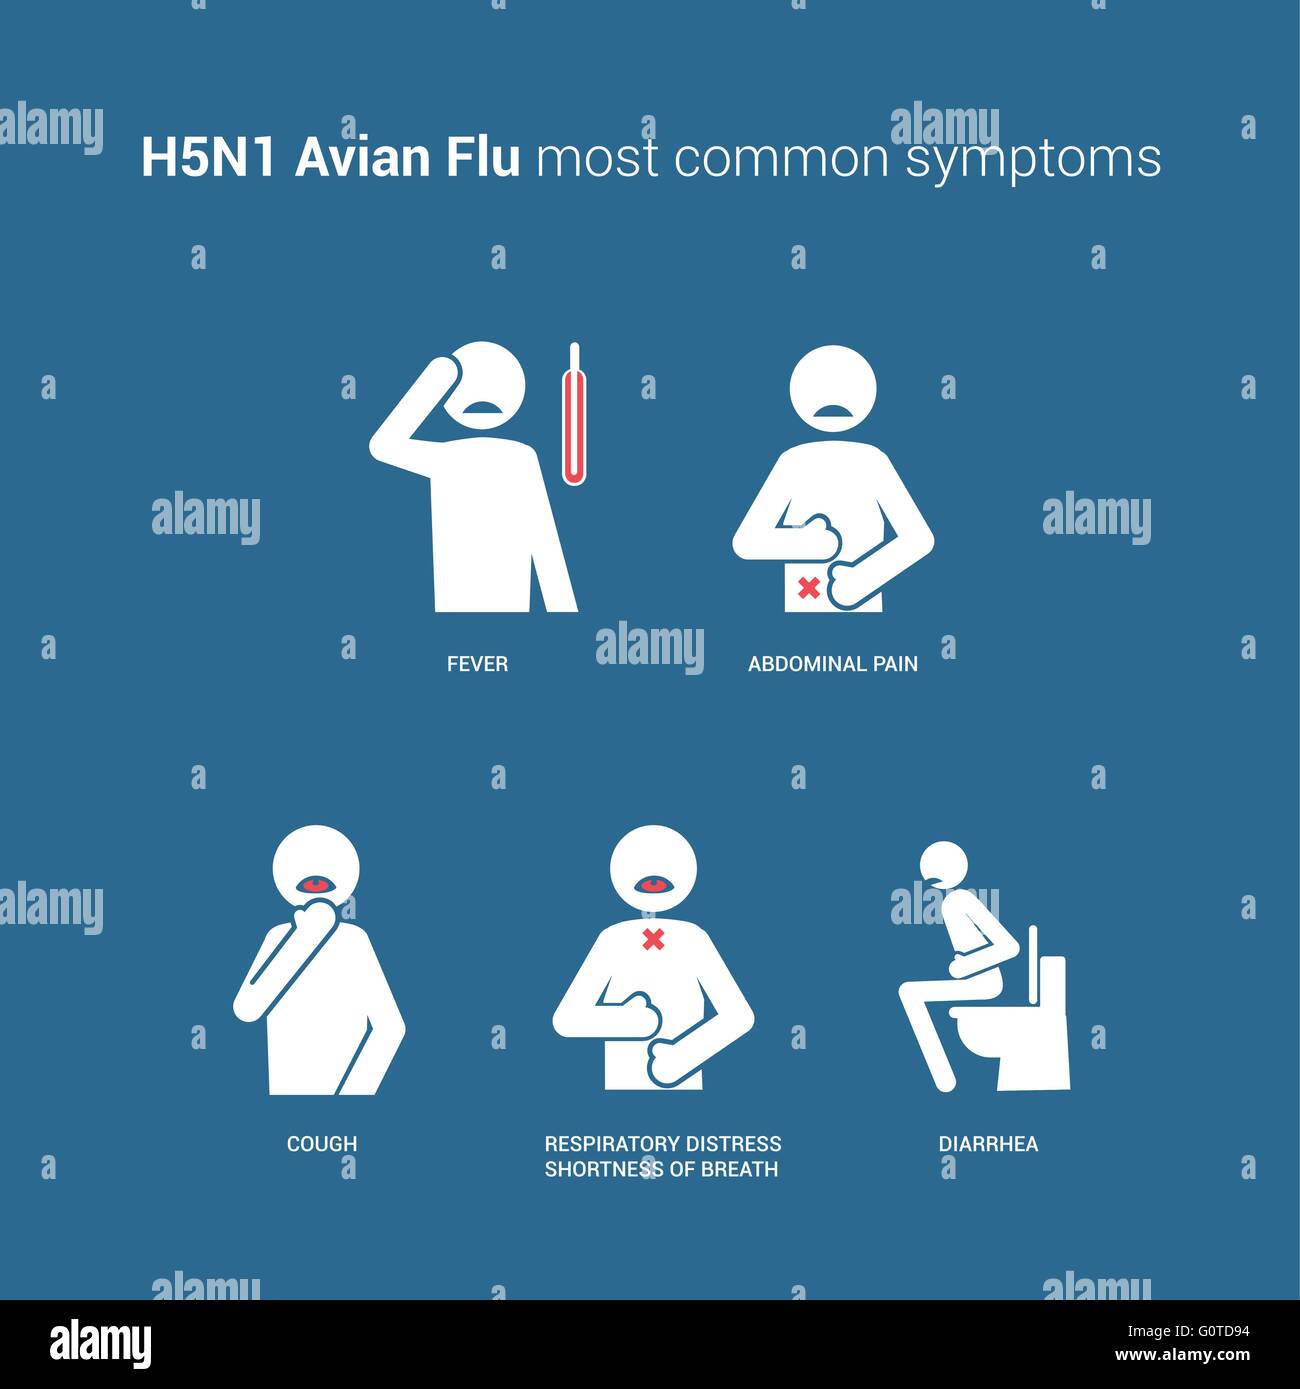 H5N1 di influenza aviaria sintomi con stick figure e testo Illustrazione Vettoriale